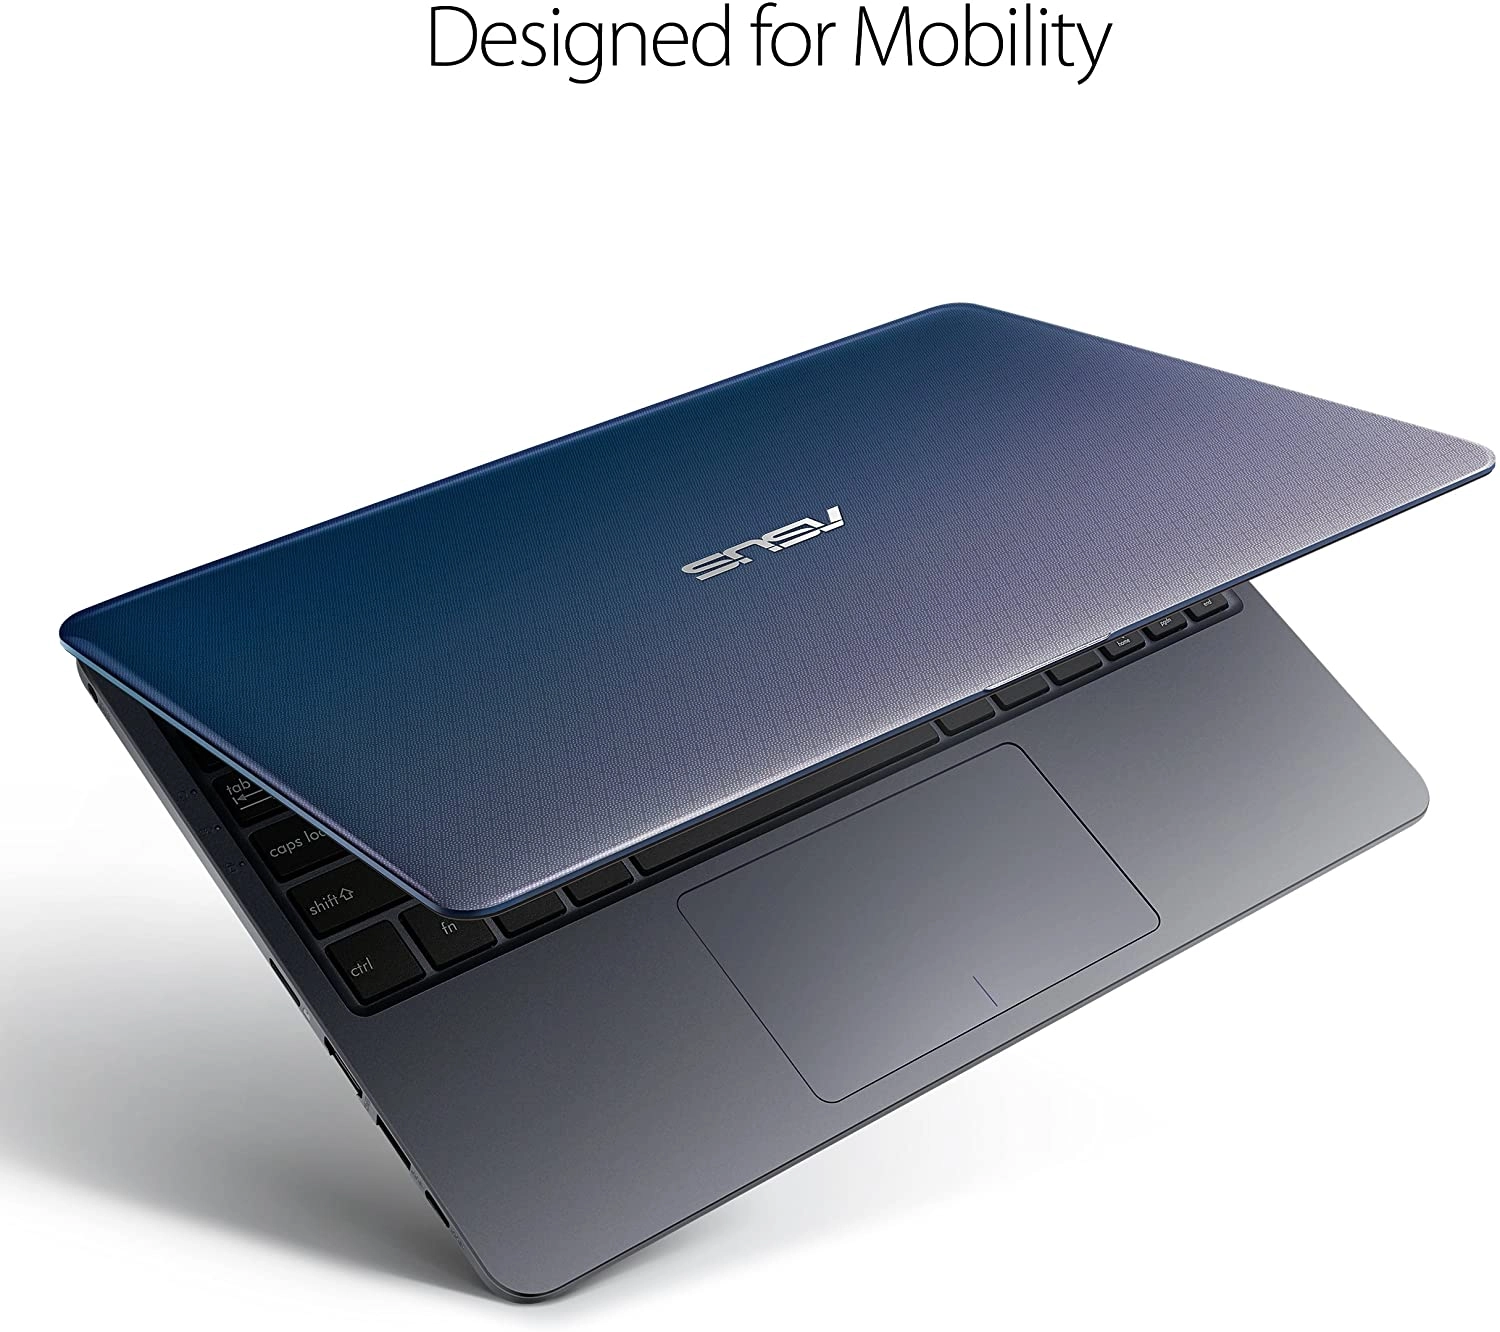 Asus VivoBook L203 laptop image